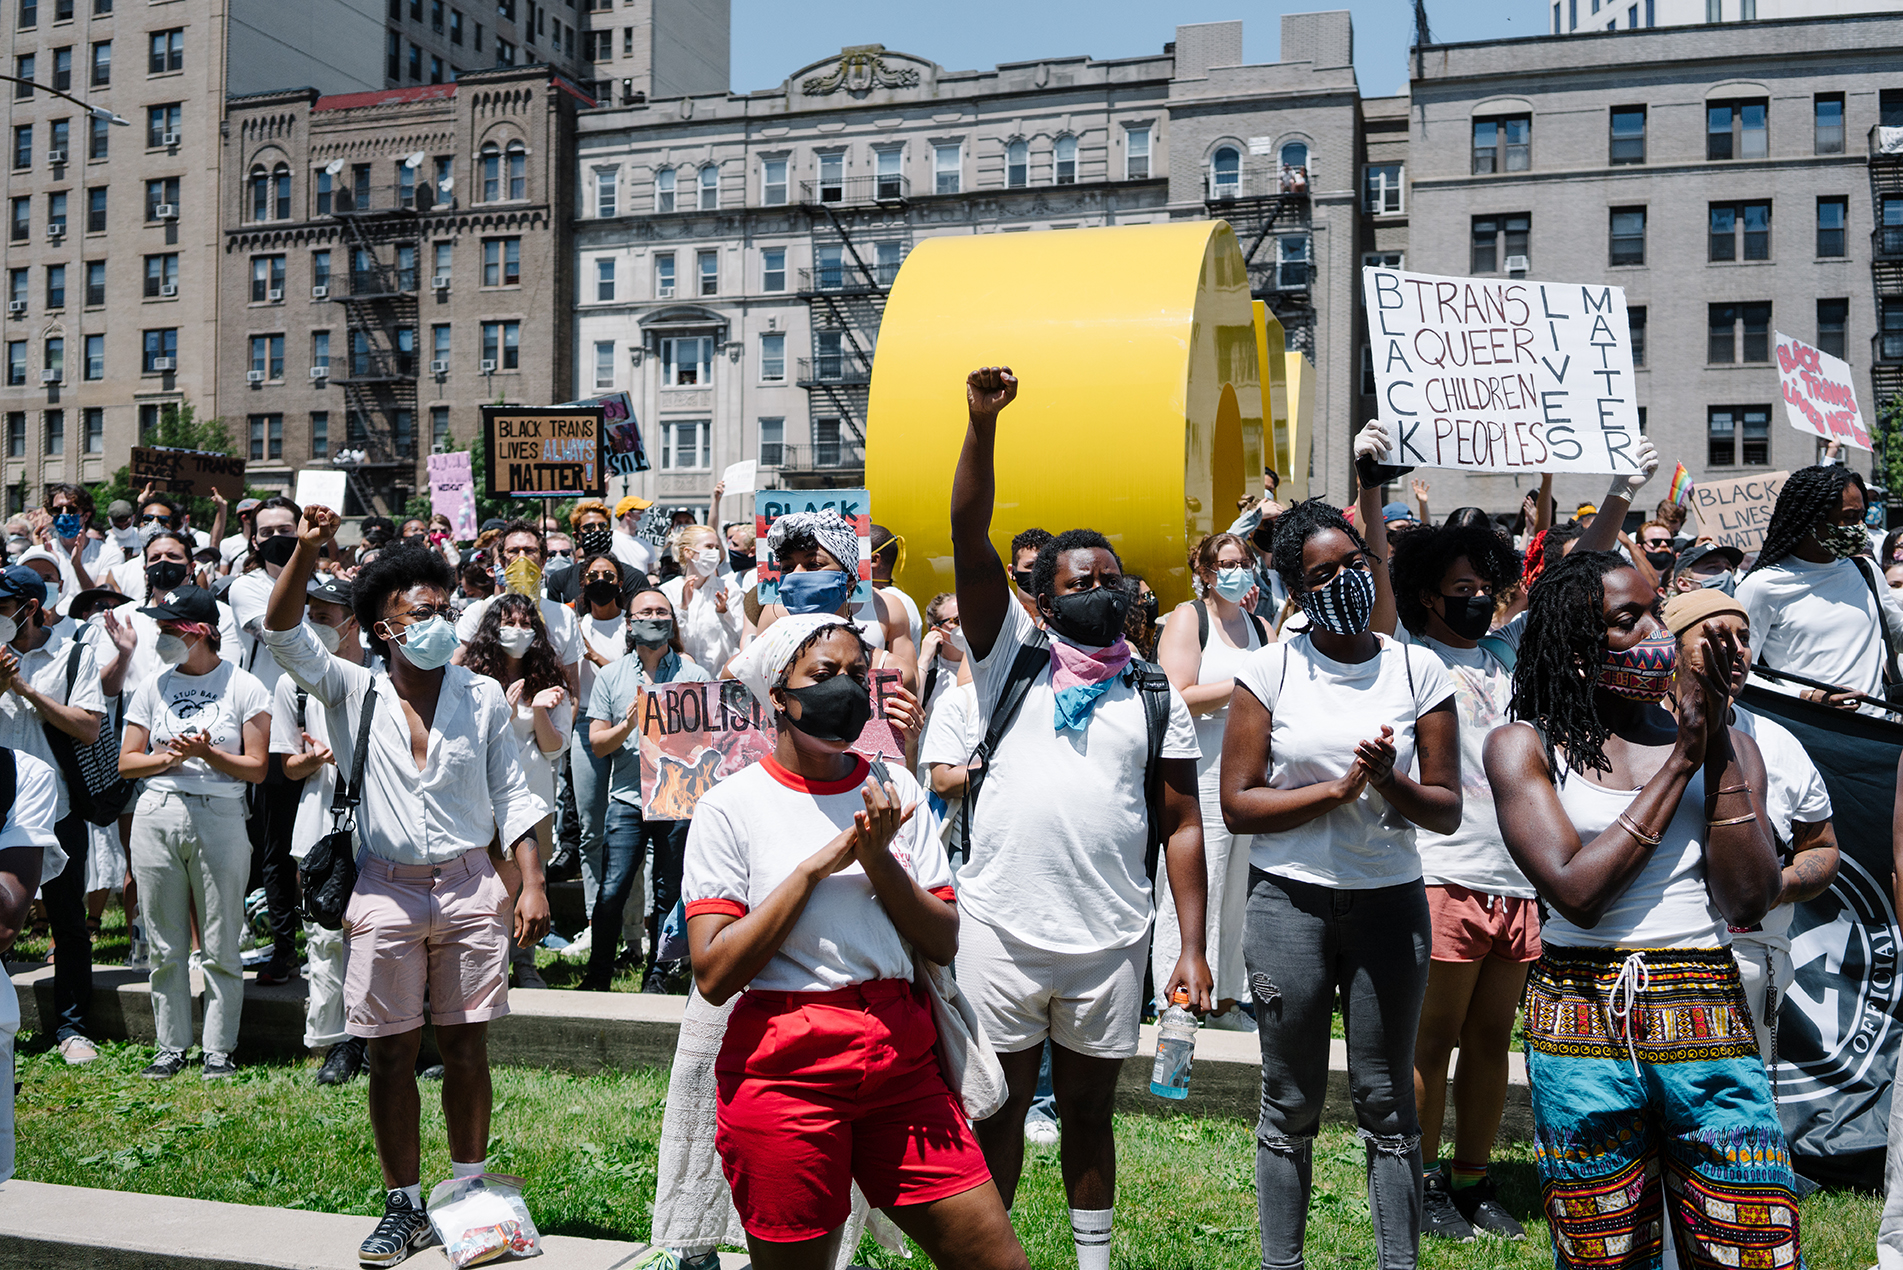 Une foule de manifestants métissés mais à prédominance noire se sont montrés solidaires sur la place à l'extérieur du Brooklyn Museum. Certains tiennent des pancartes, d'autres lèvent le poing. Tous sont vêtus de blanc.